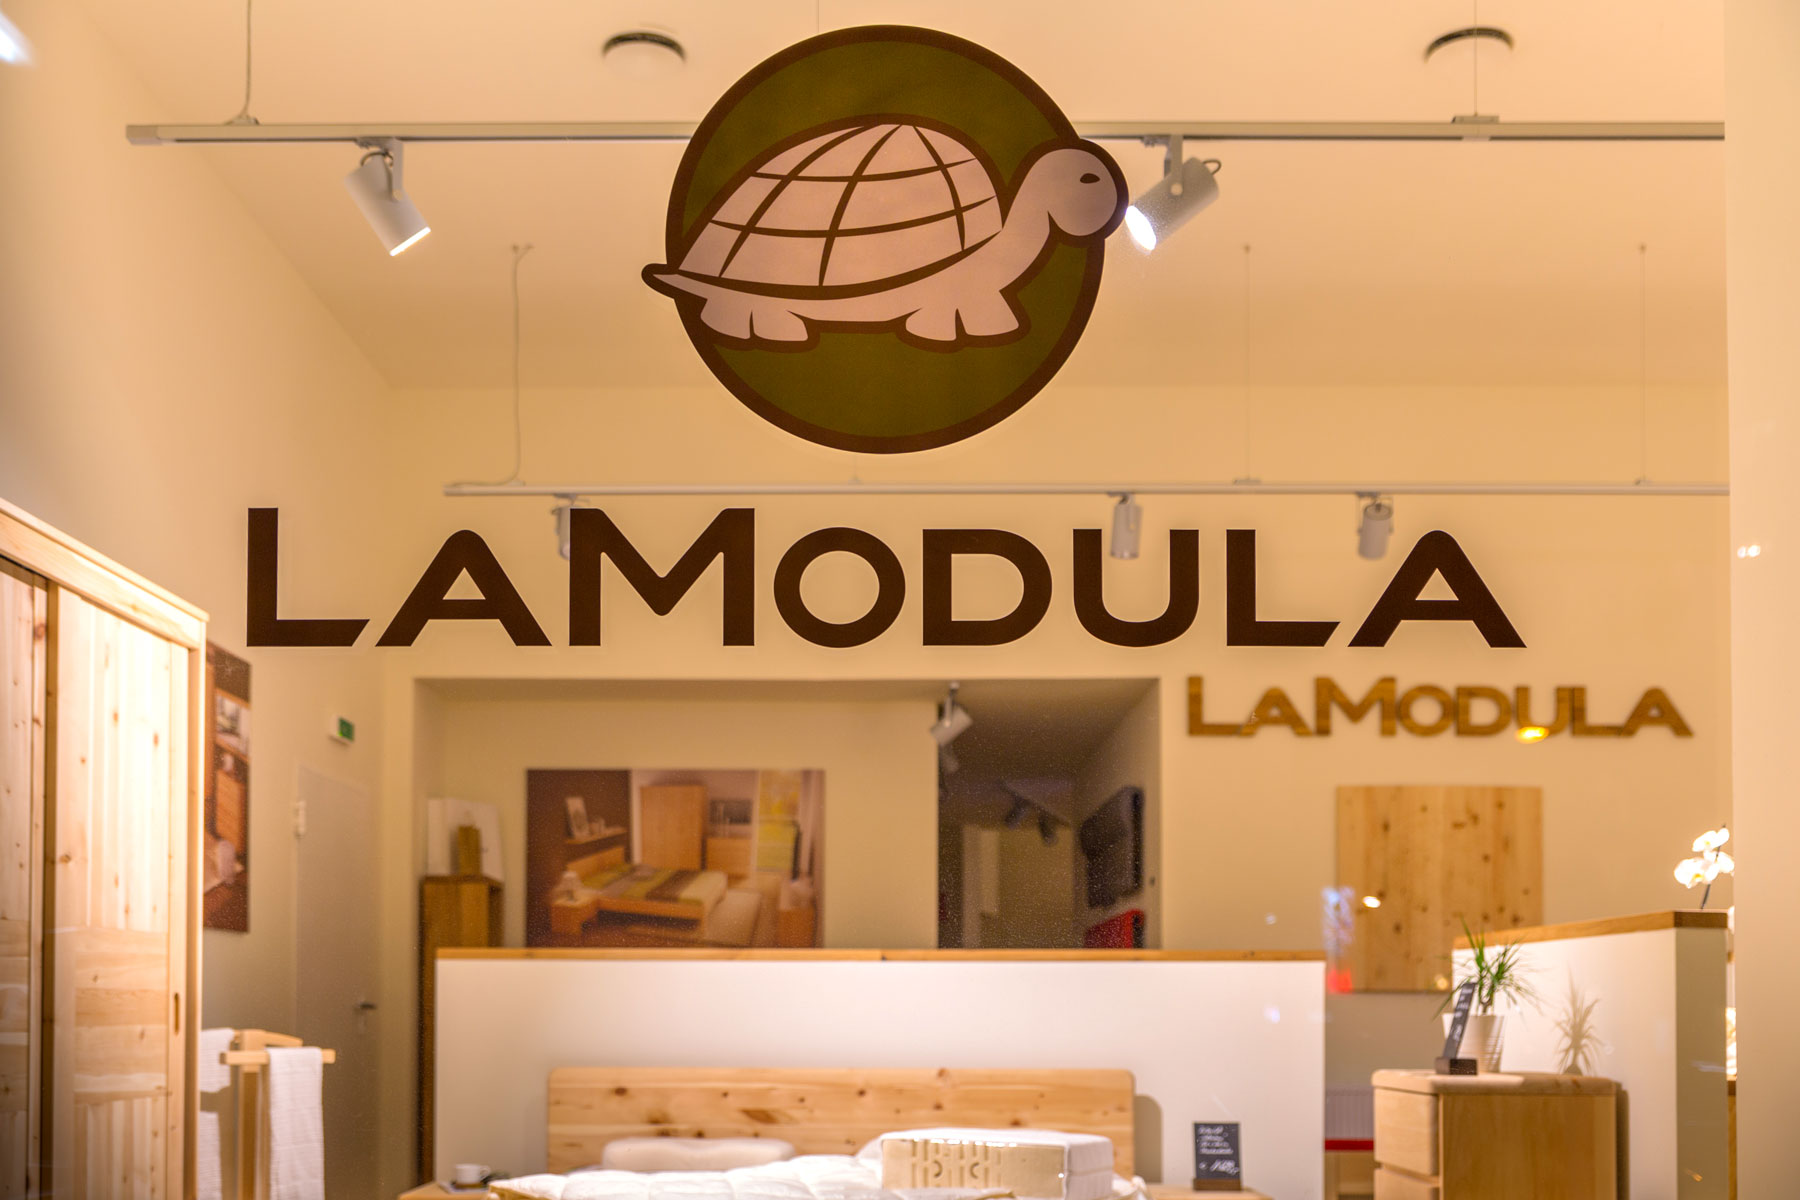 LaModula